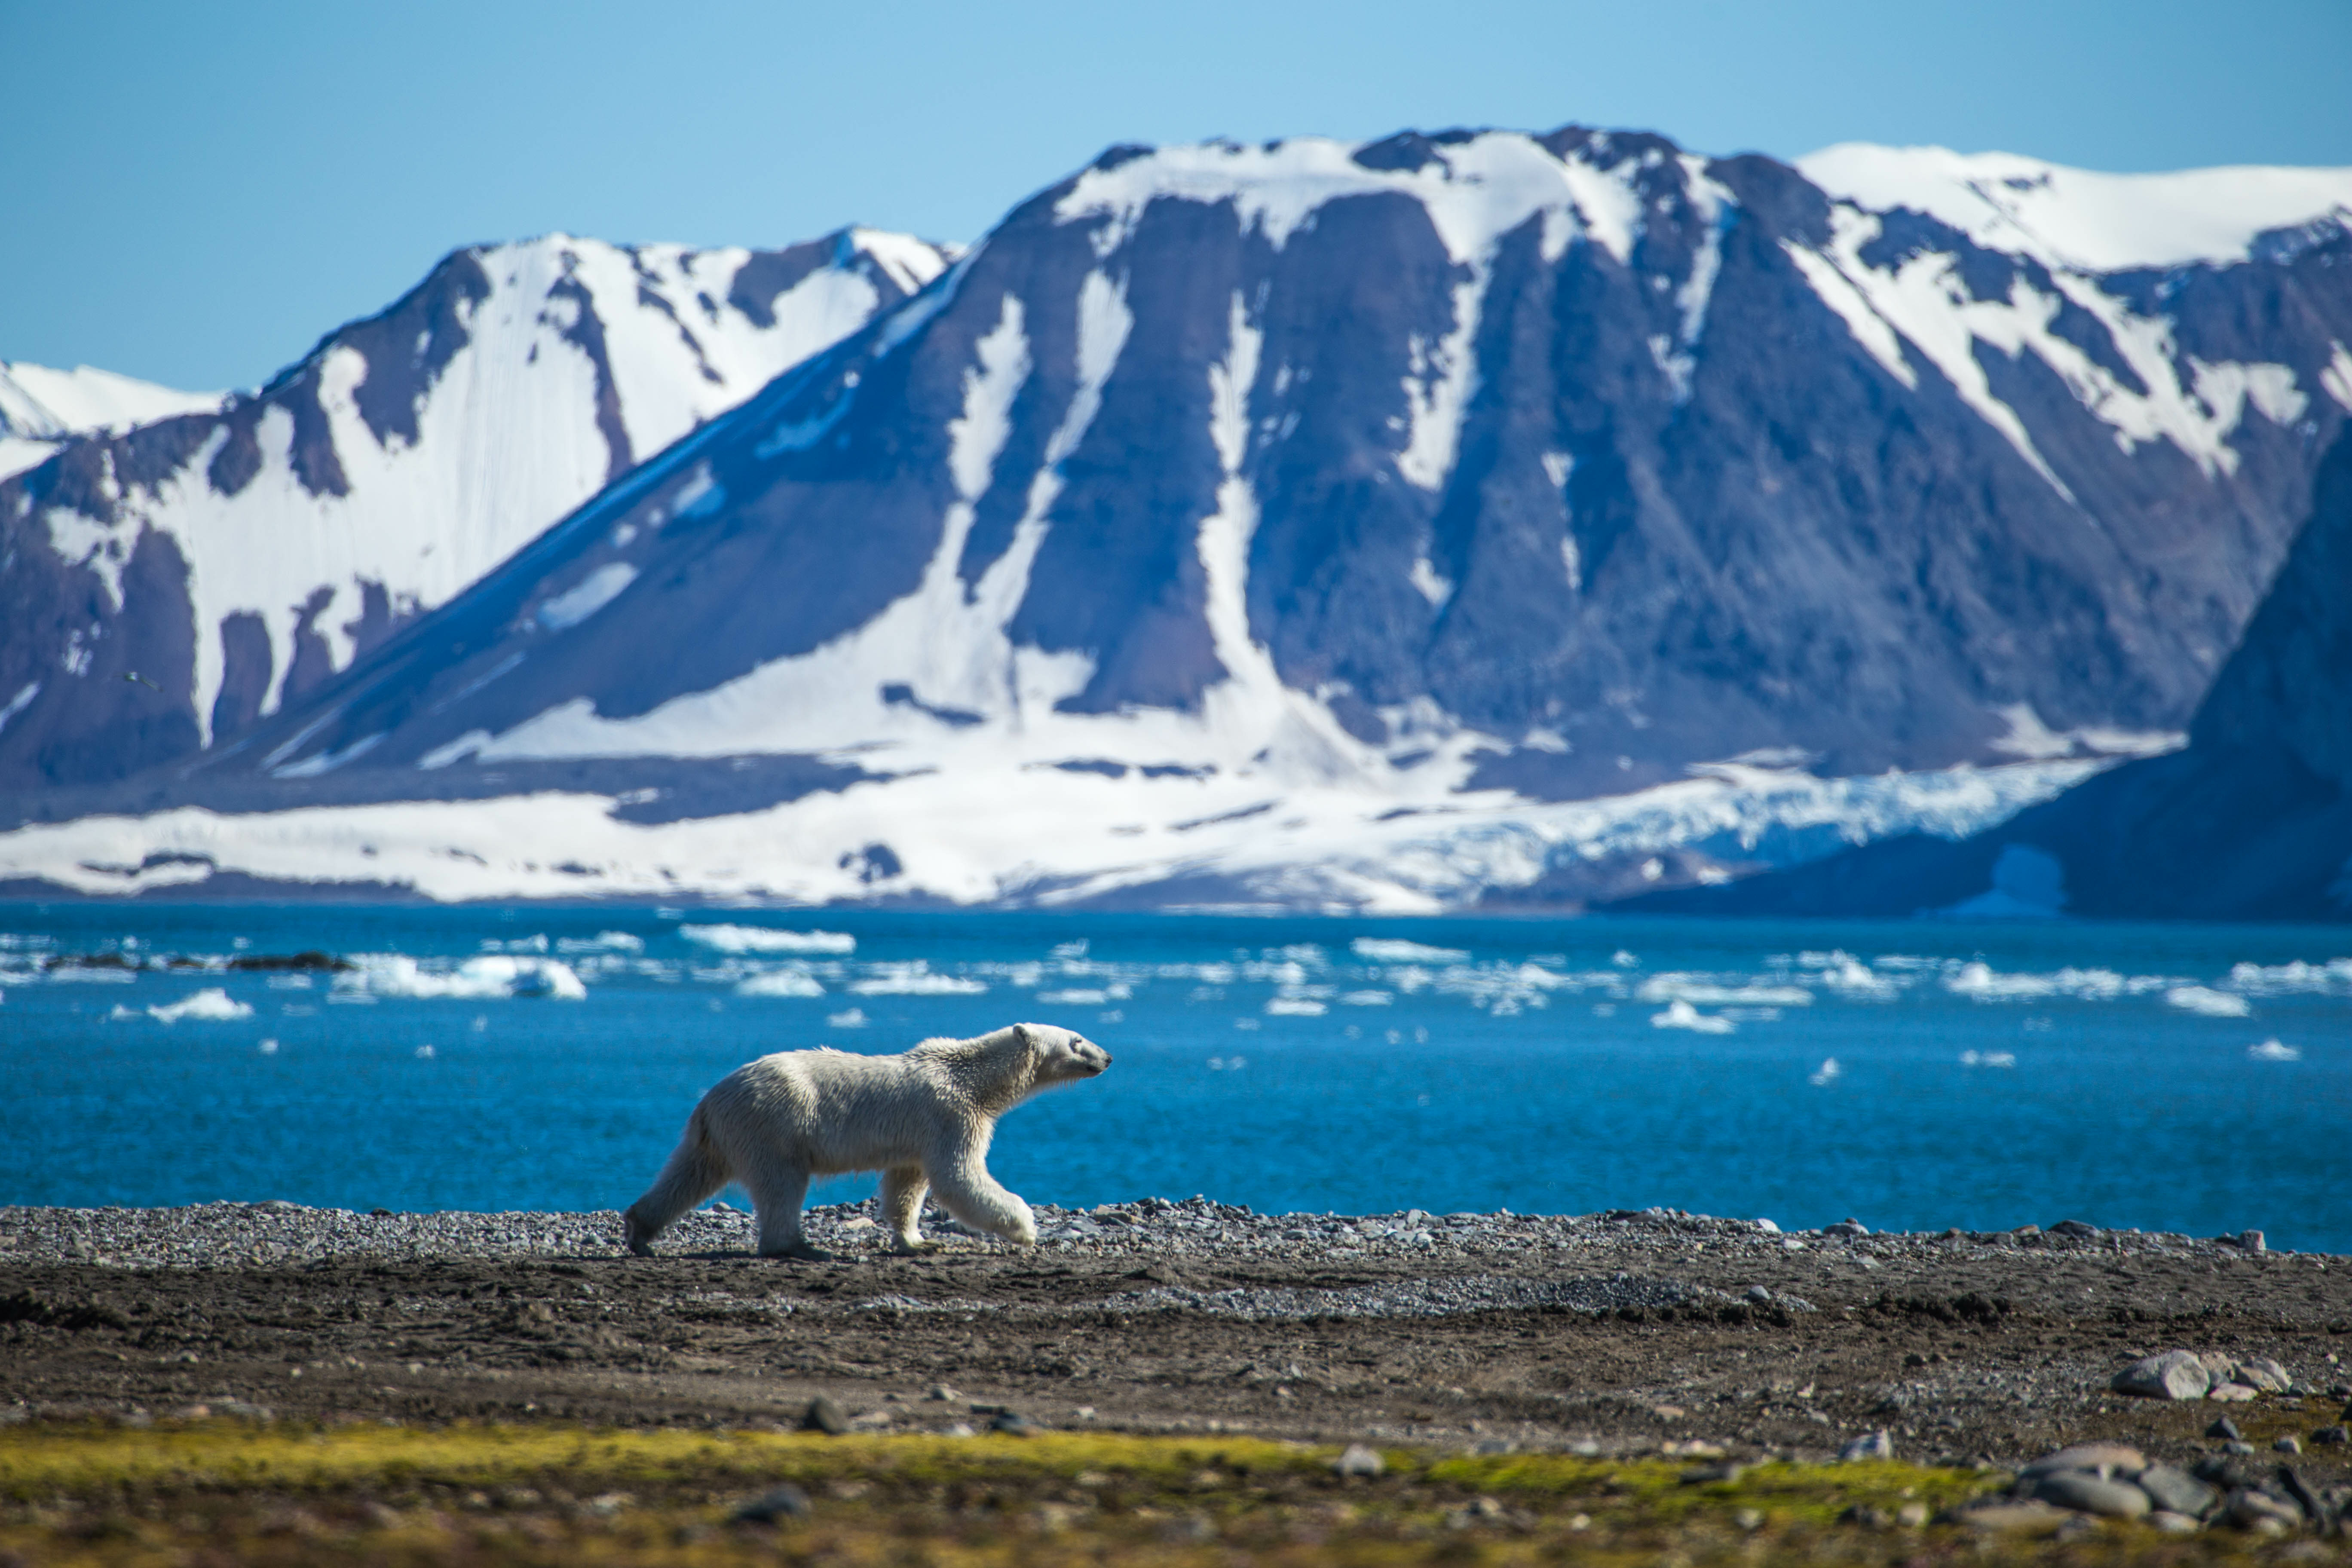 Klimat polarny to termin meteorologiczny określający regiony arktyczne ze średnią temperaturą najcieplejszego miesiąca w roku poniżej 10 stopni. 